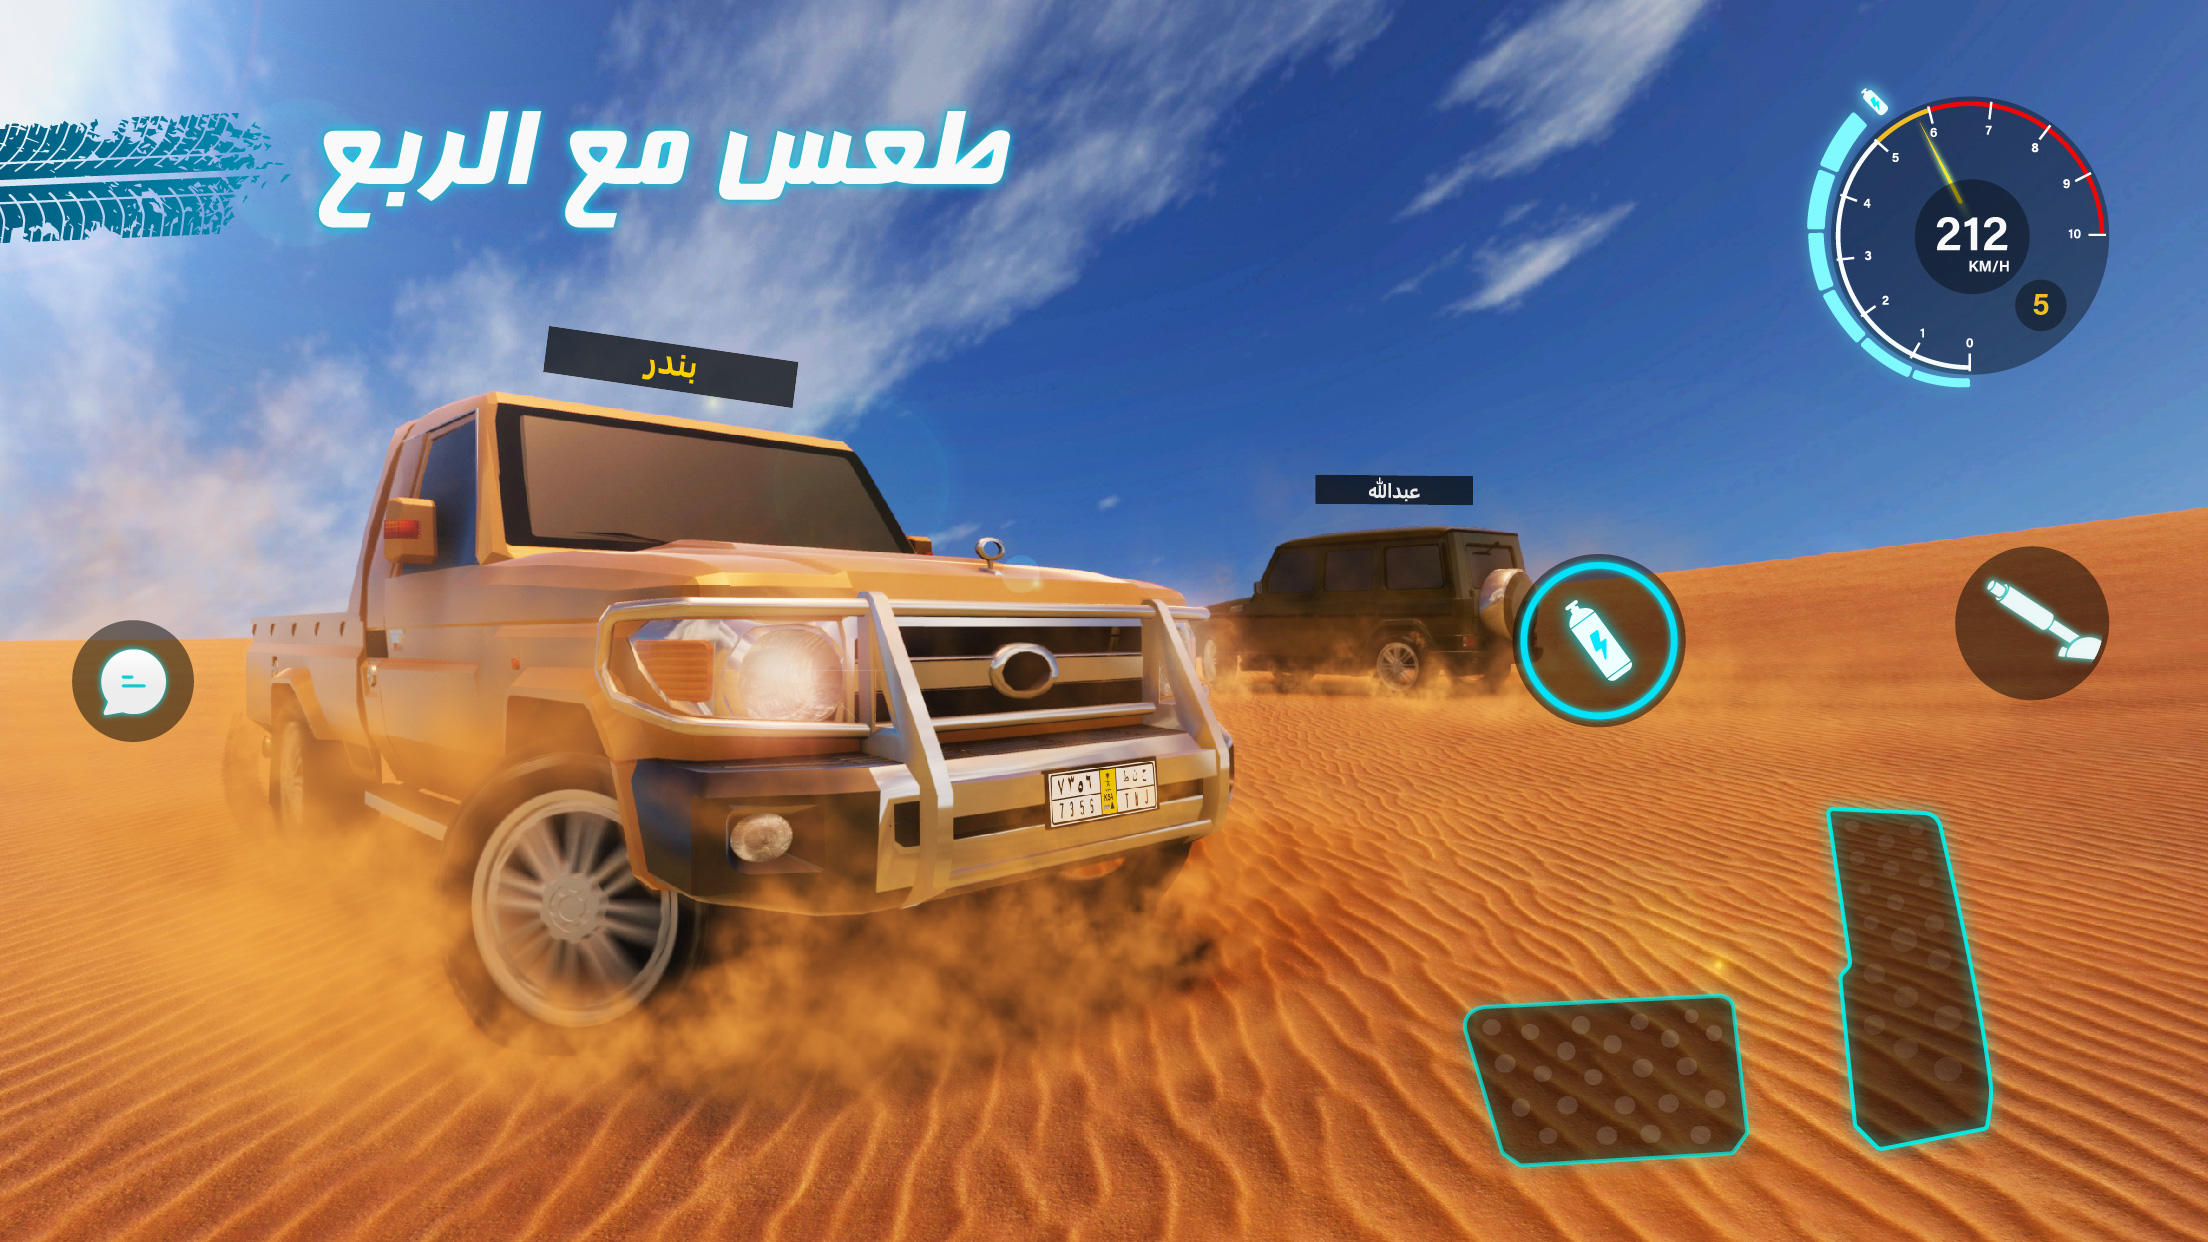 كنق الصحراء - تطعيس 2遊戲截圖